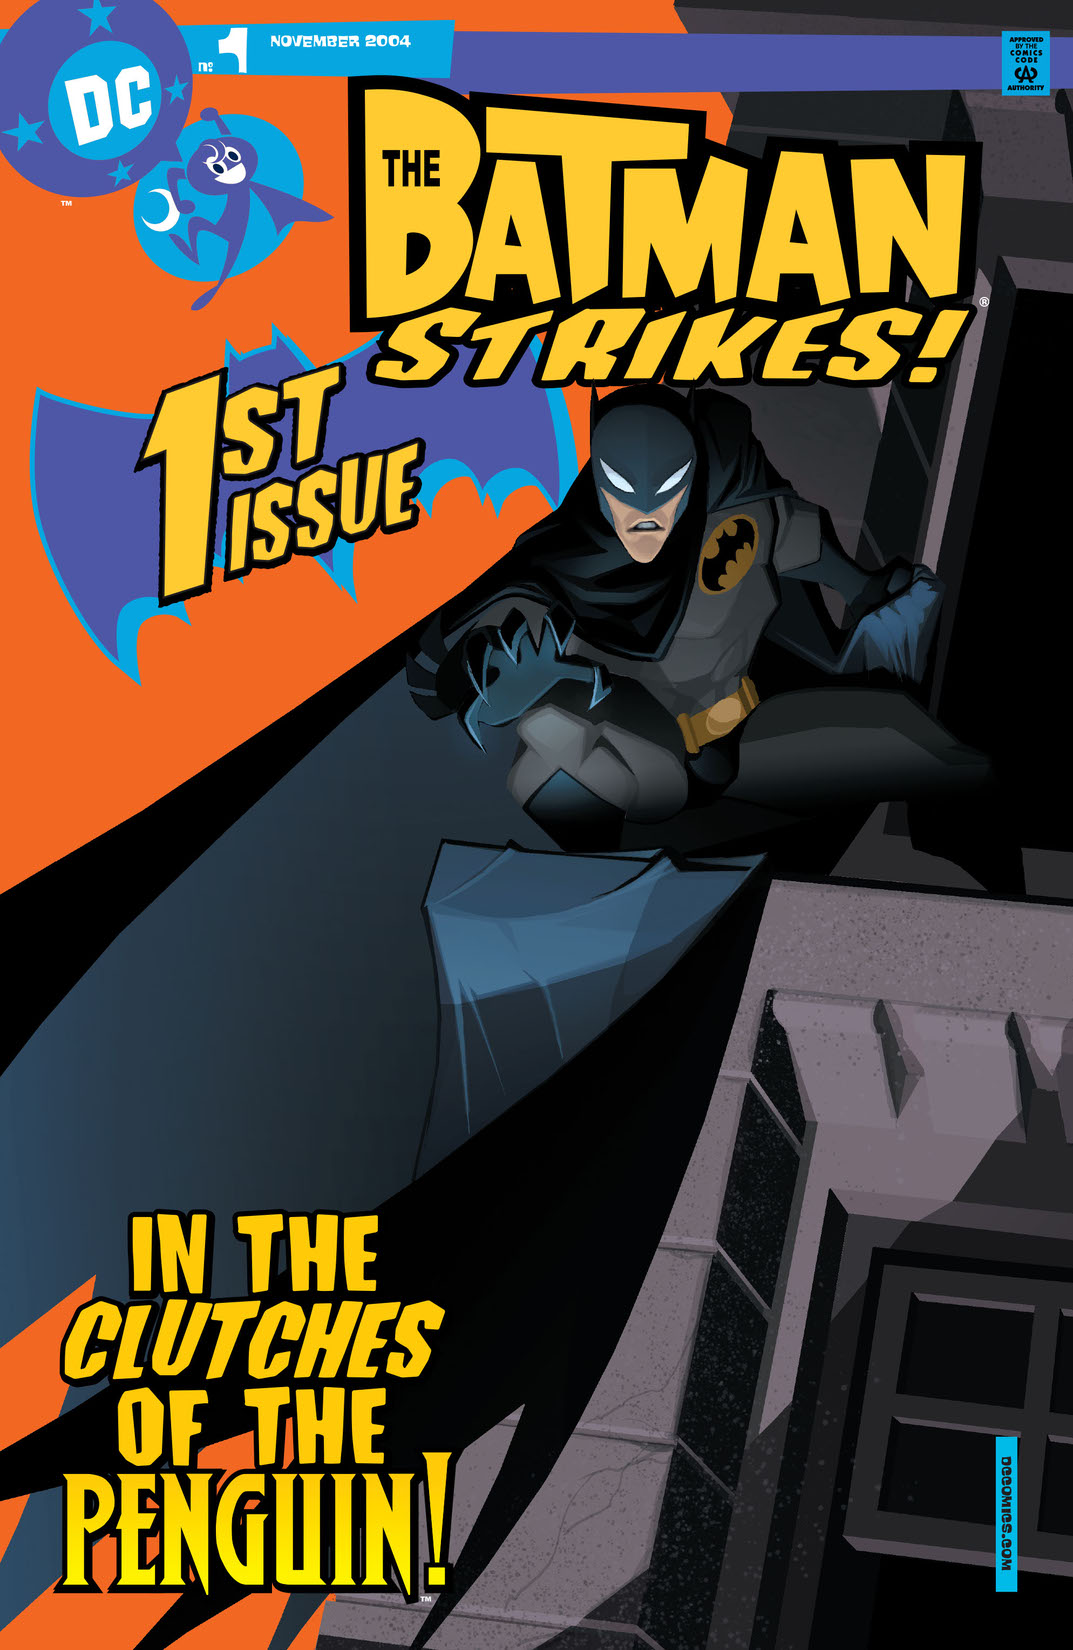 Batman Strikes! #1 preview images